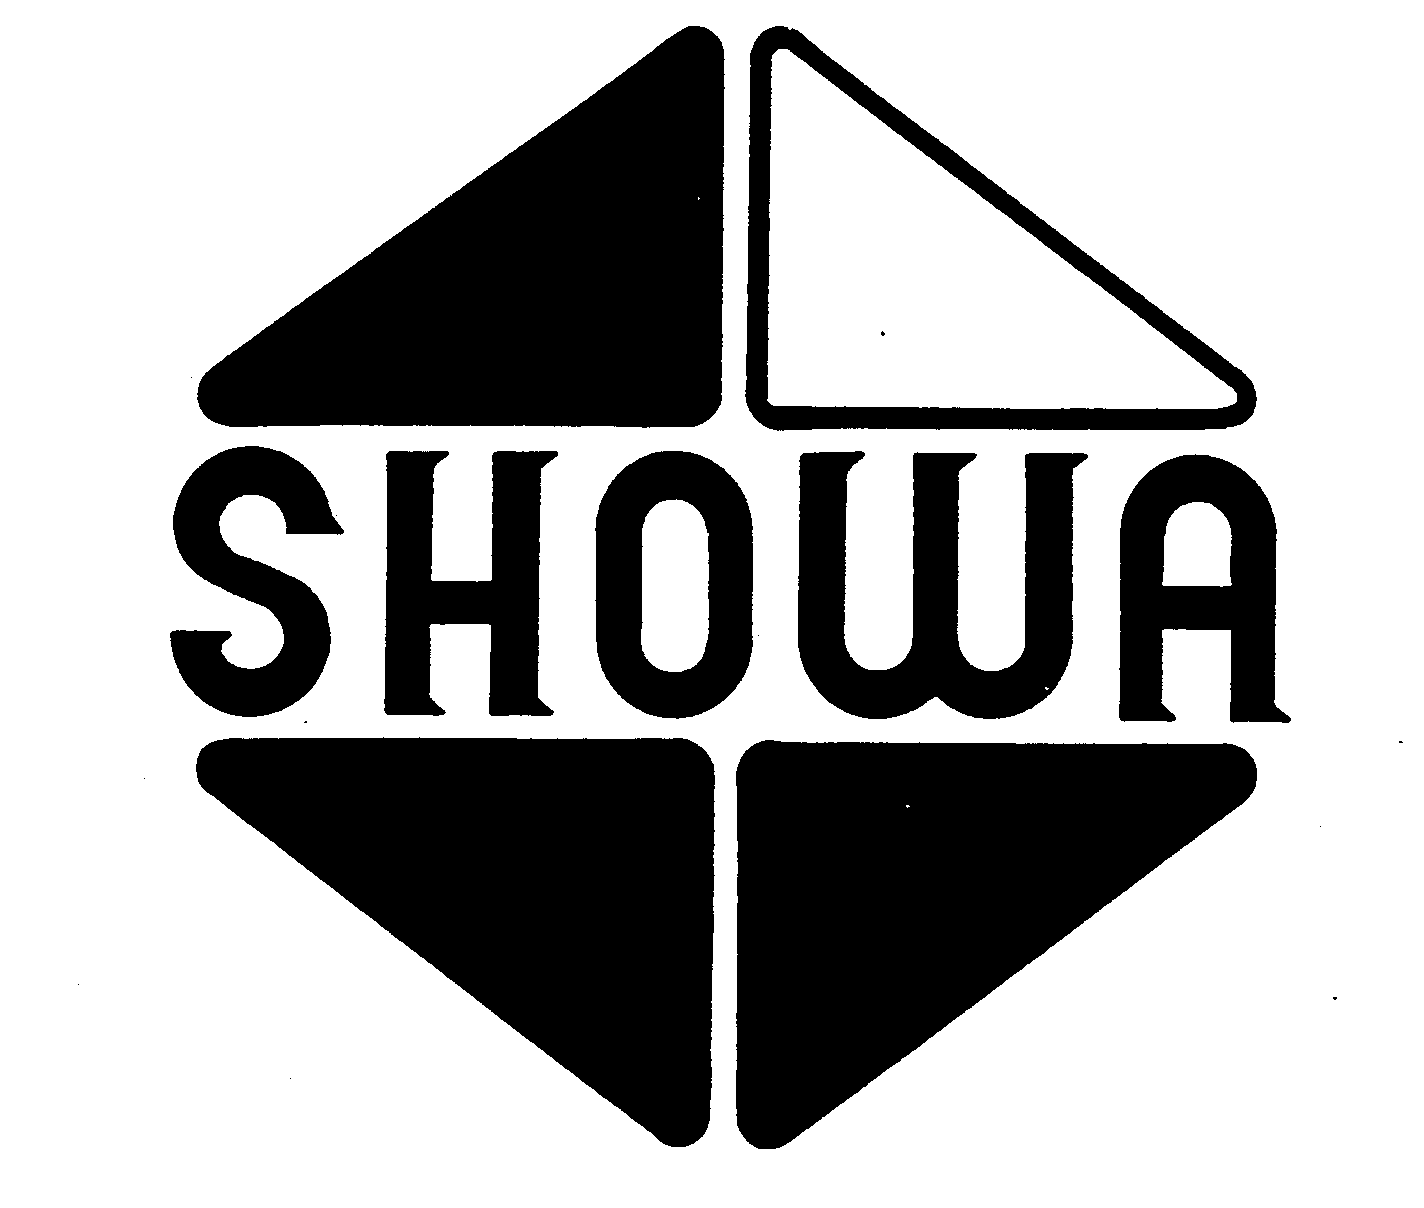 SHOWA